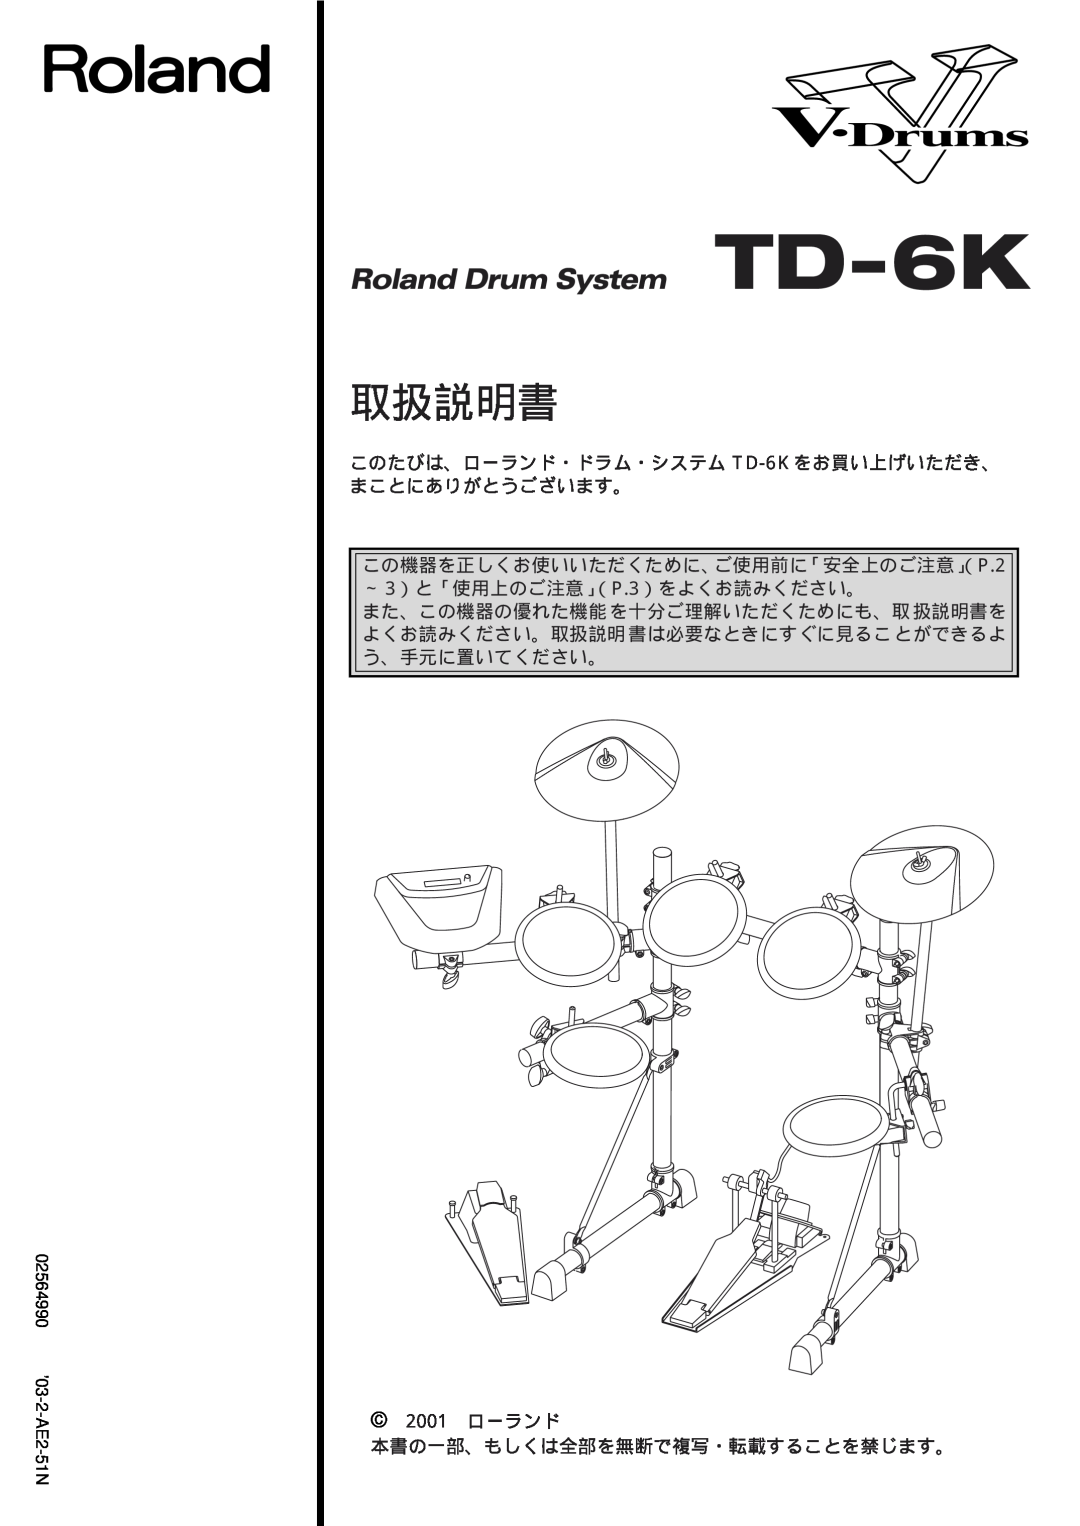 Roland manual このたびは、ローランド・ドラム・システム TD-6K をお買い上げいただき、 まことにありがとうございます。, 取扱説明書, 2001 ローランド, 02564990 ’03-2-AE2-51N 